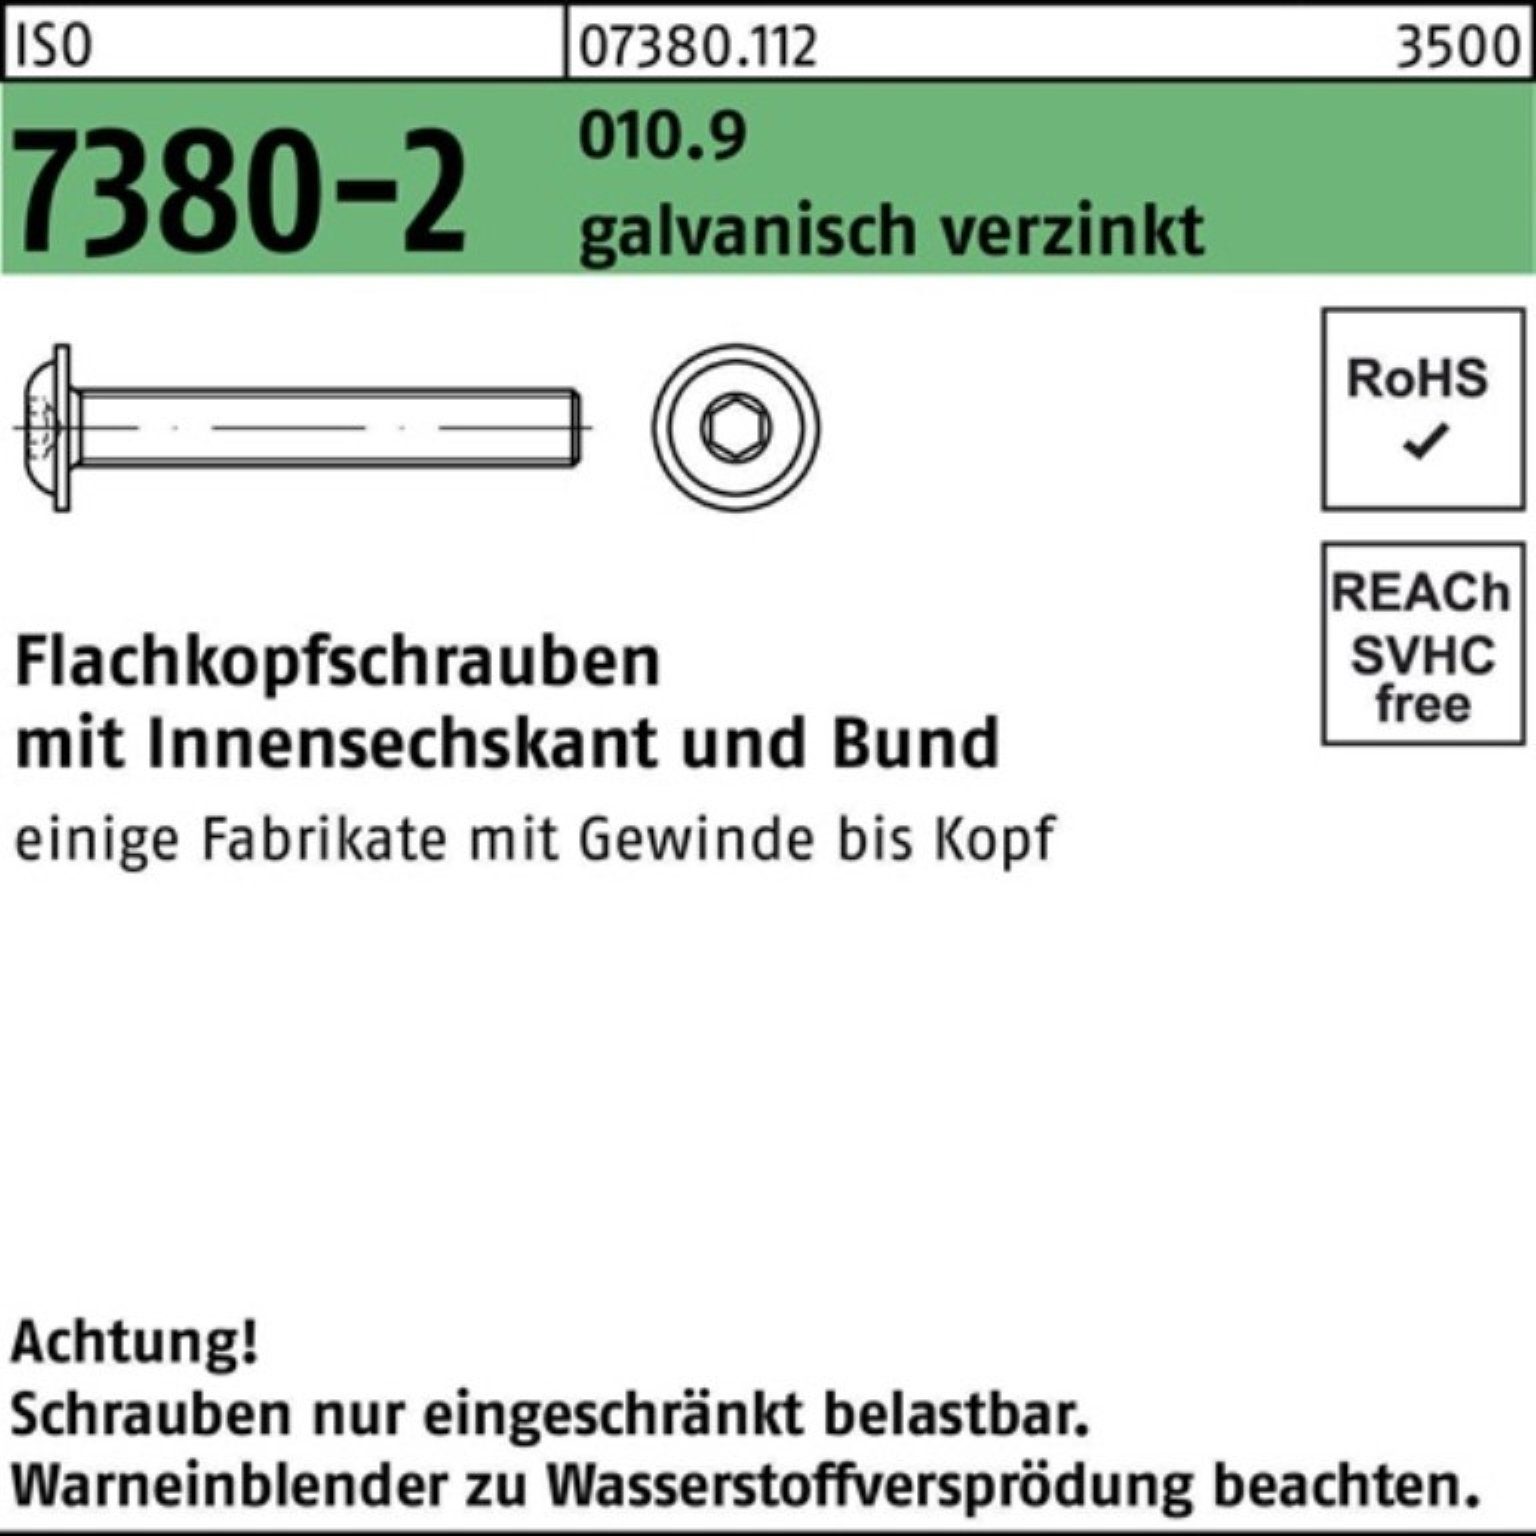 Reyher Schraube 100er Pack Flachkopfschraube ISO 7380-2 Bund/Innen-6kt M12x50 010.9 ga